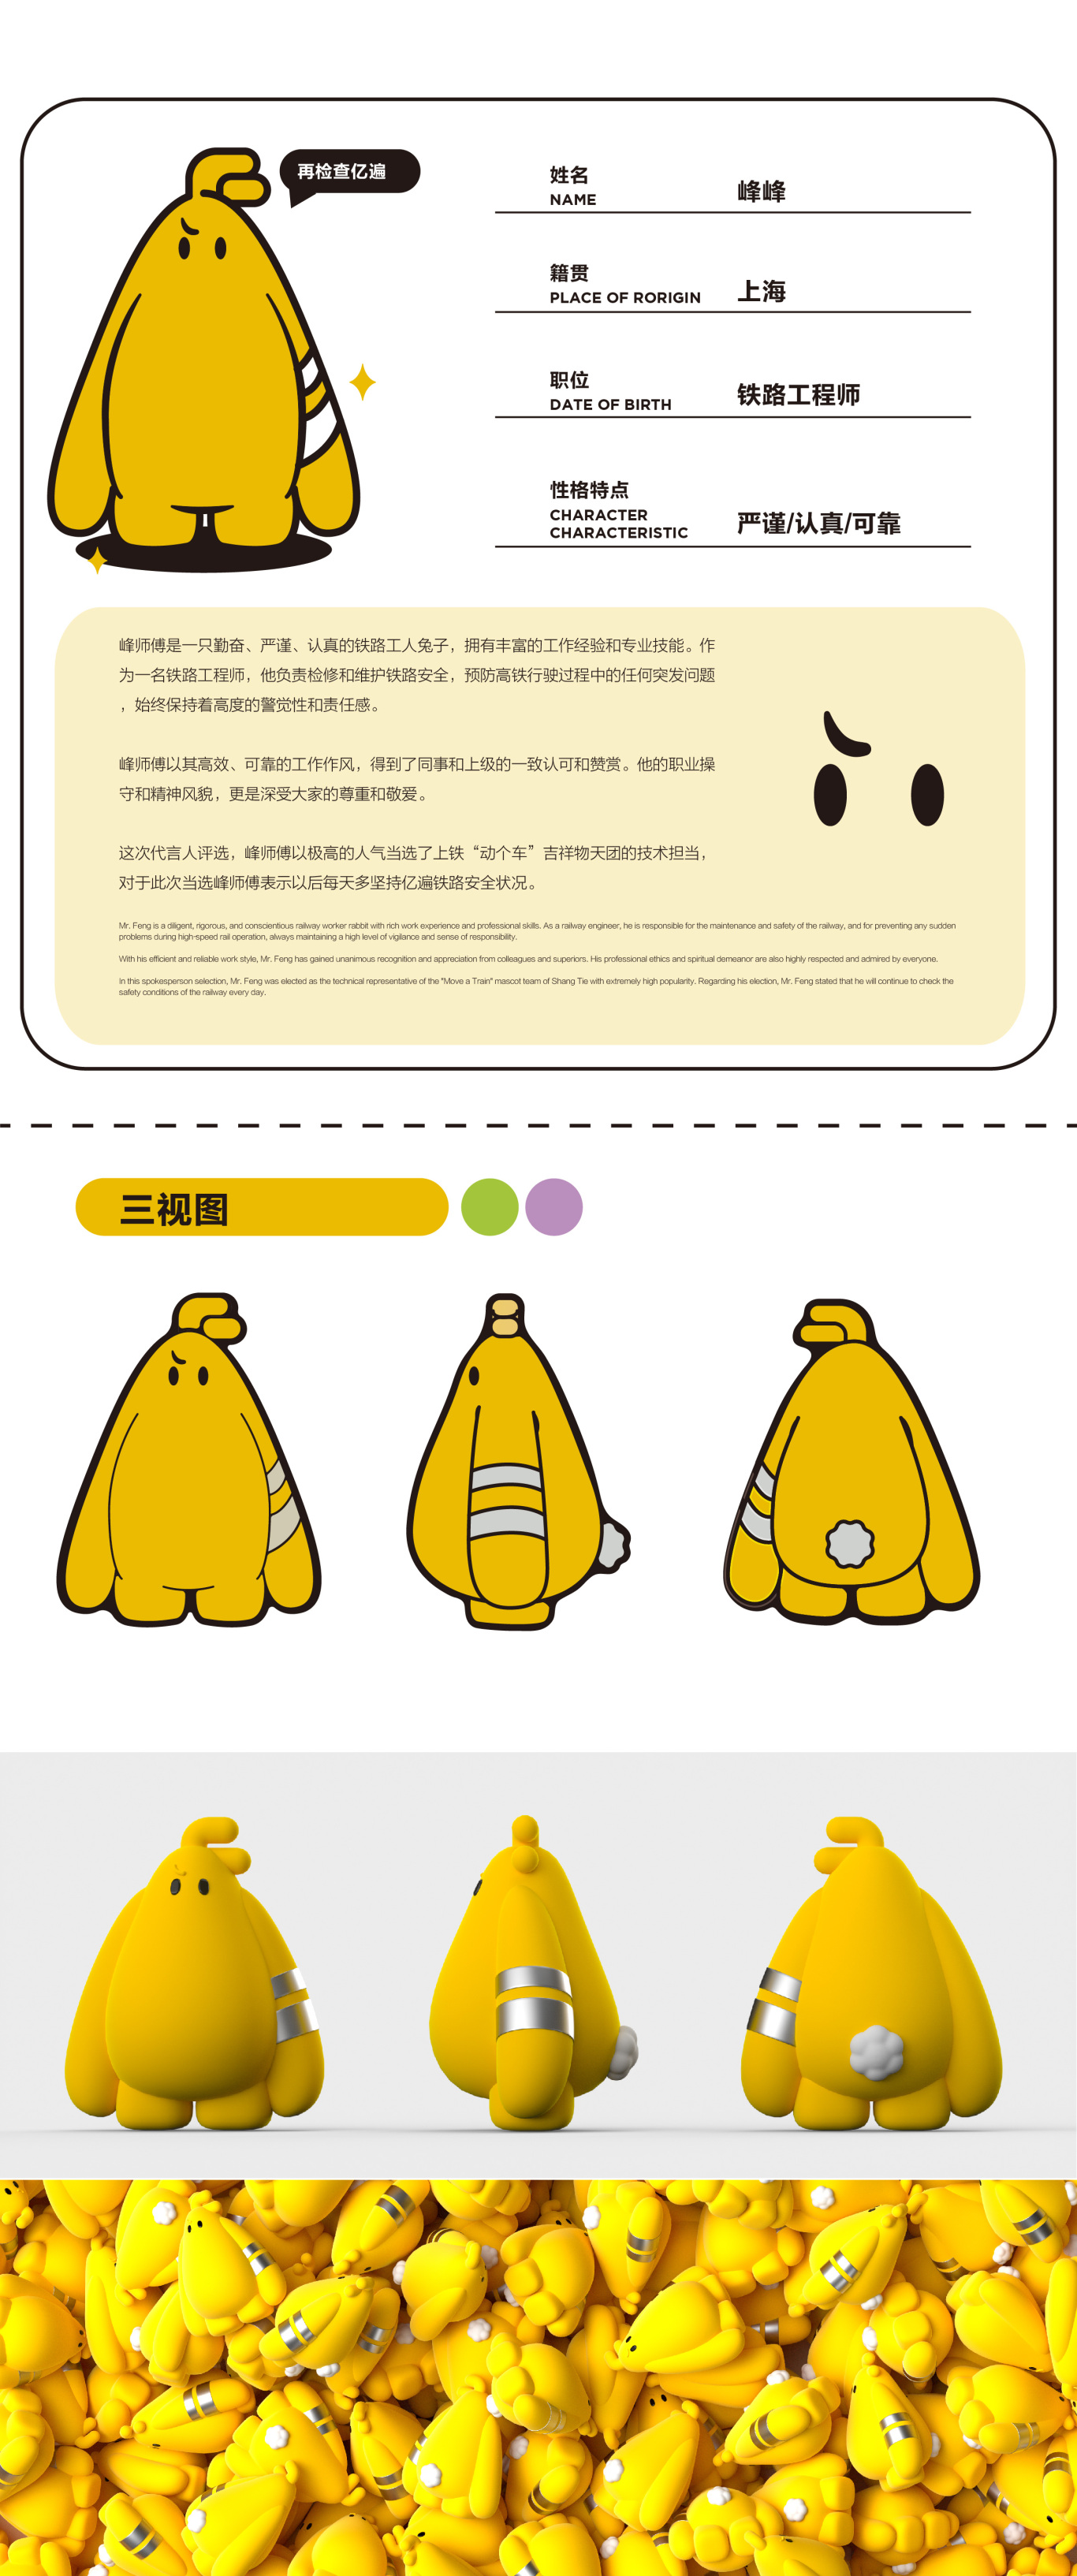 上海铁路吉祥物设计图4